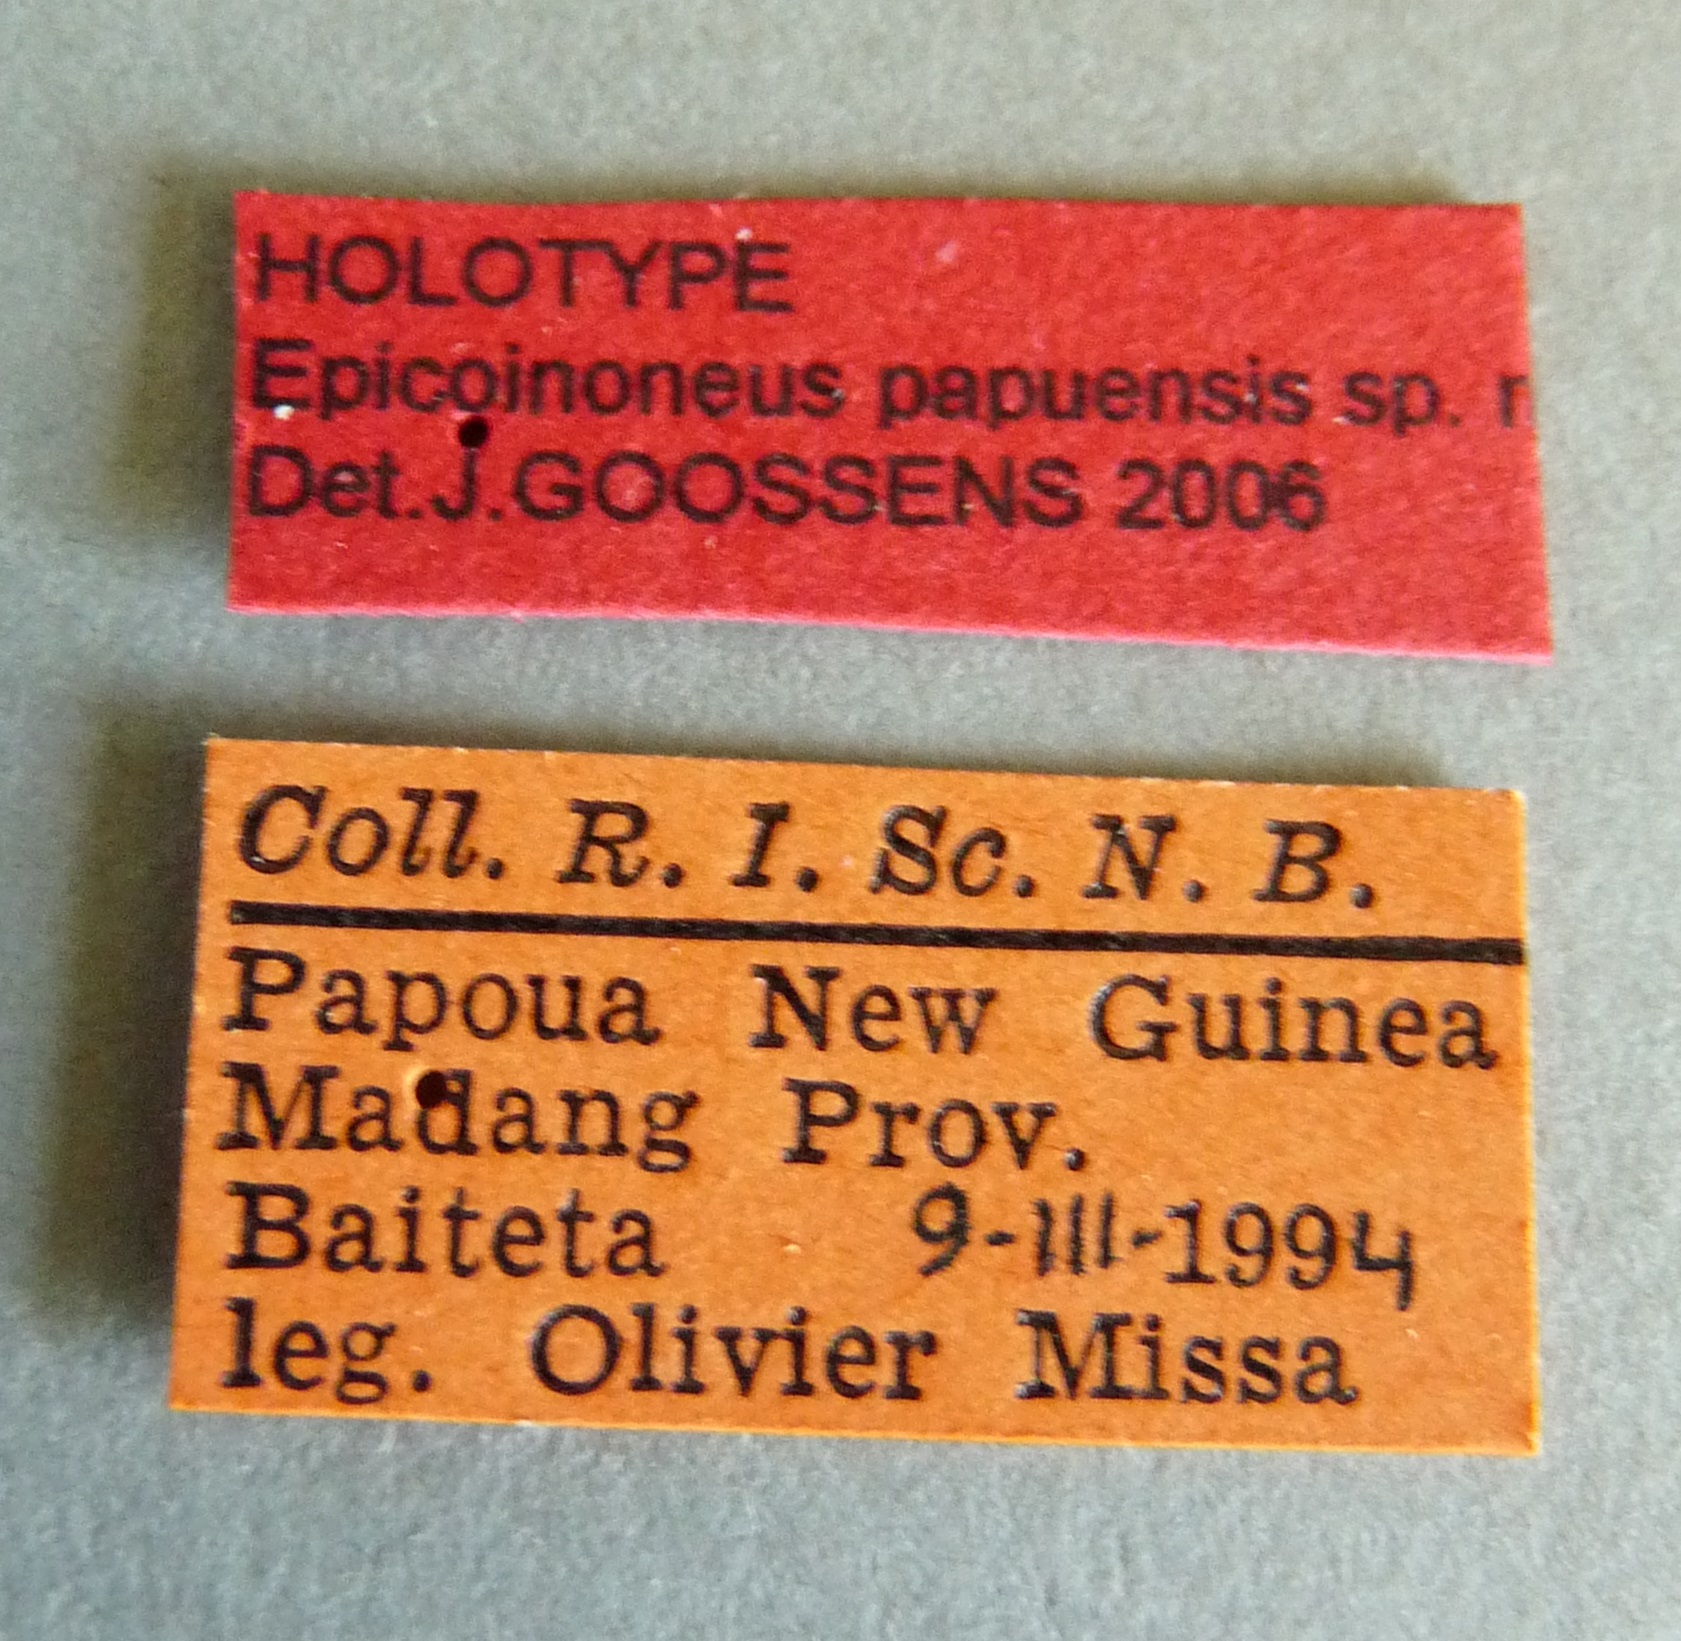 Epicoinoneus papuensis ht Labels.jpg